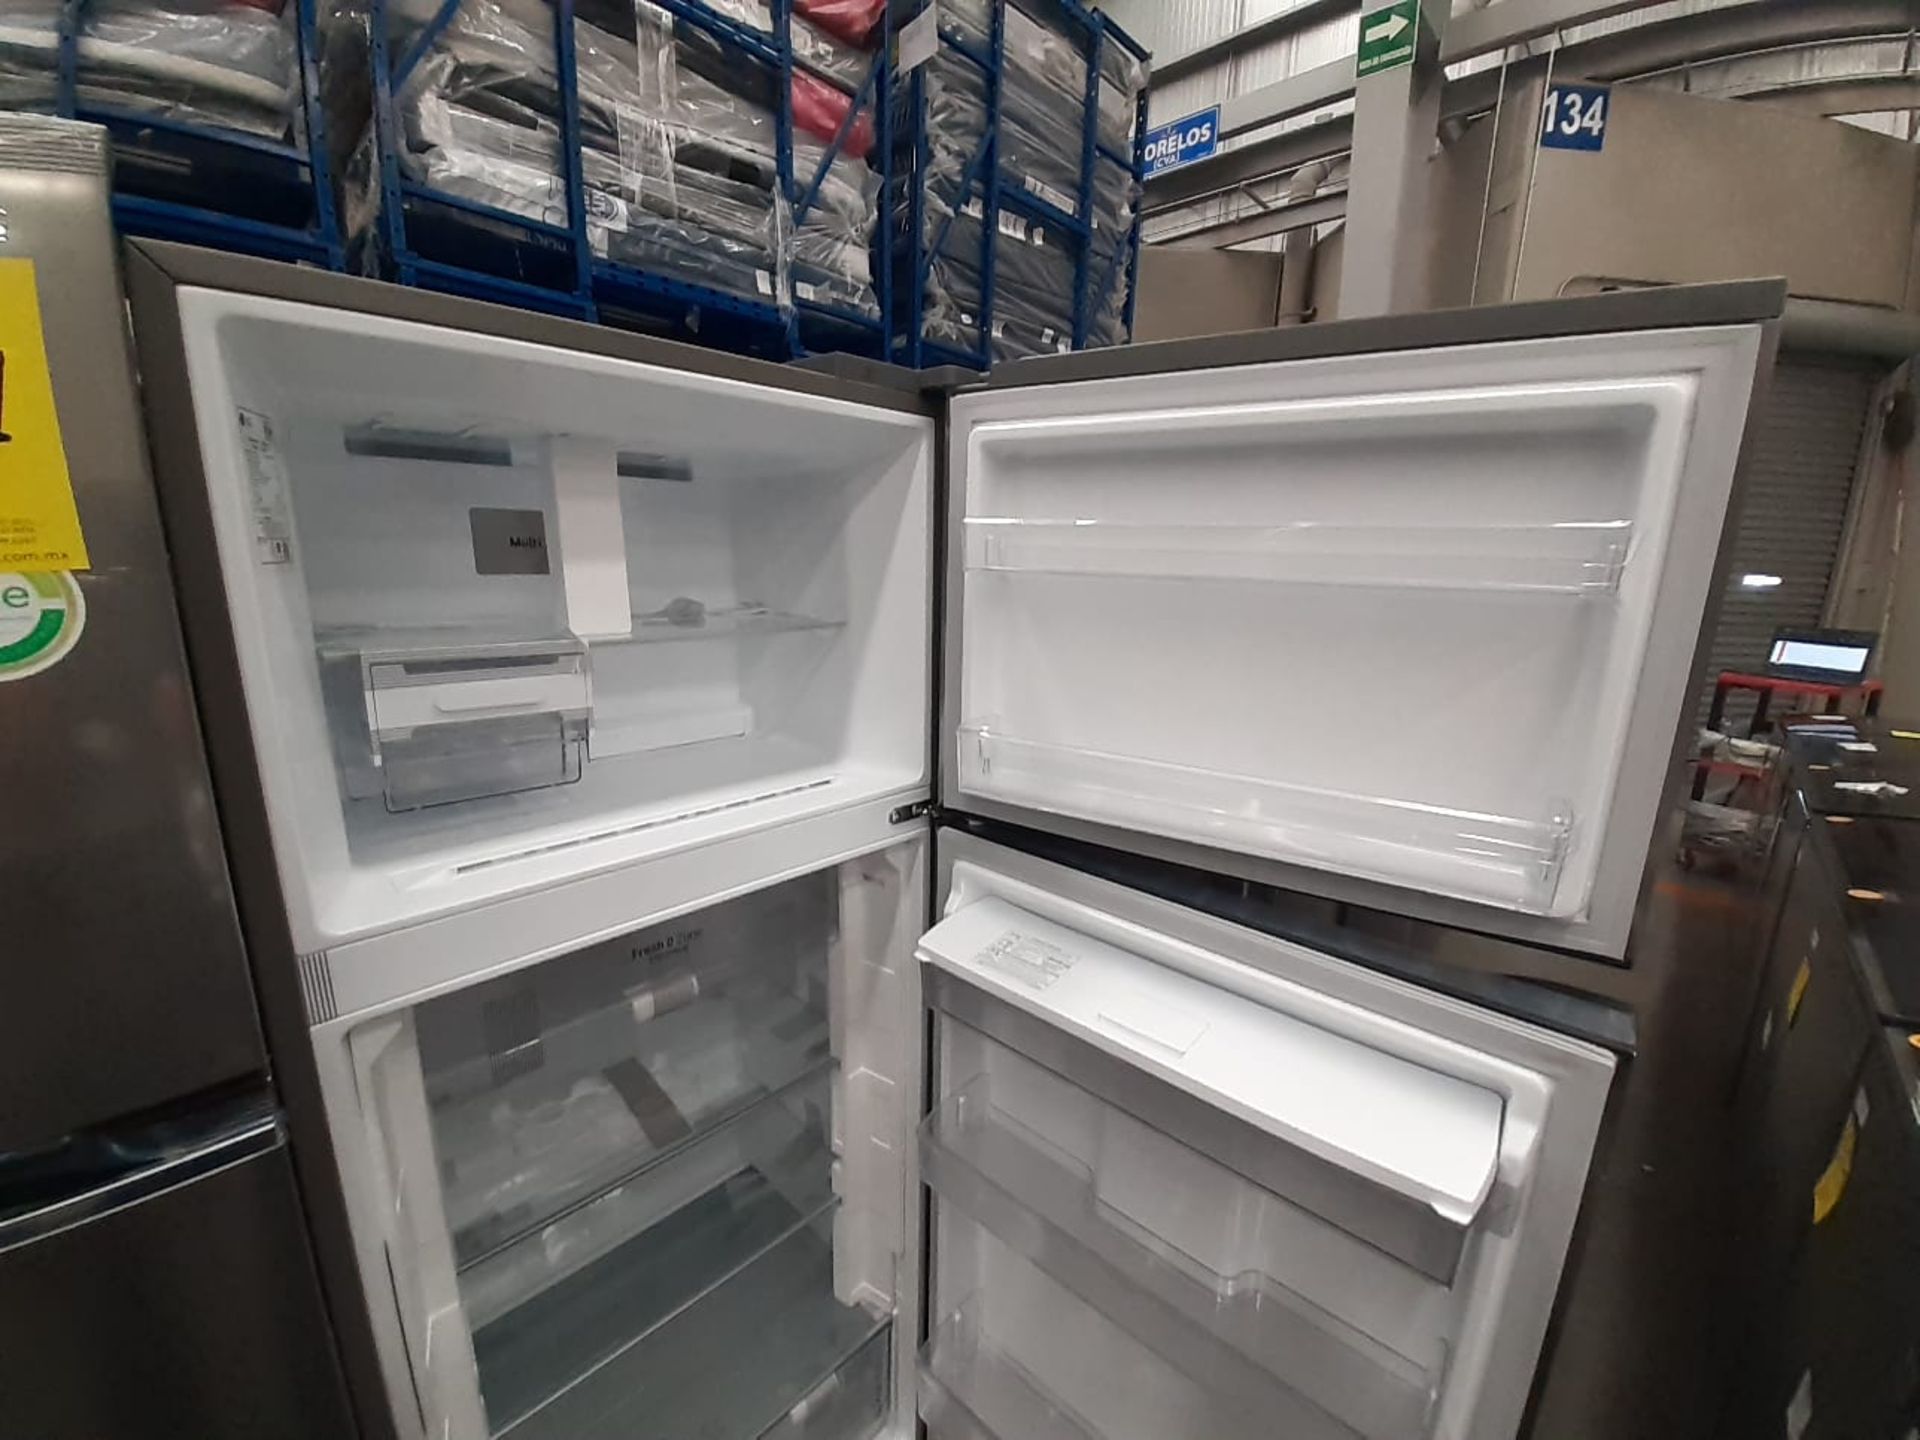 (Nuevo) Lote de 1 Refrigerador con Dispensador de Agua Marca LG, Modelo VT40AWP, Serie Q0W800, Colo - Image 4 of 6